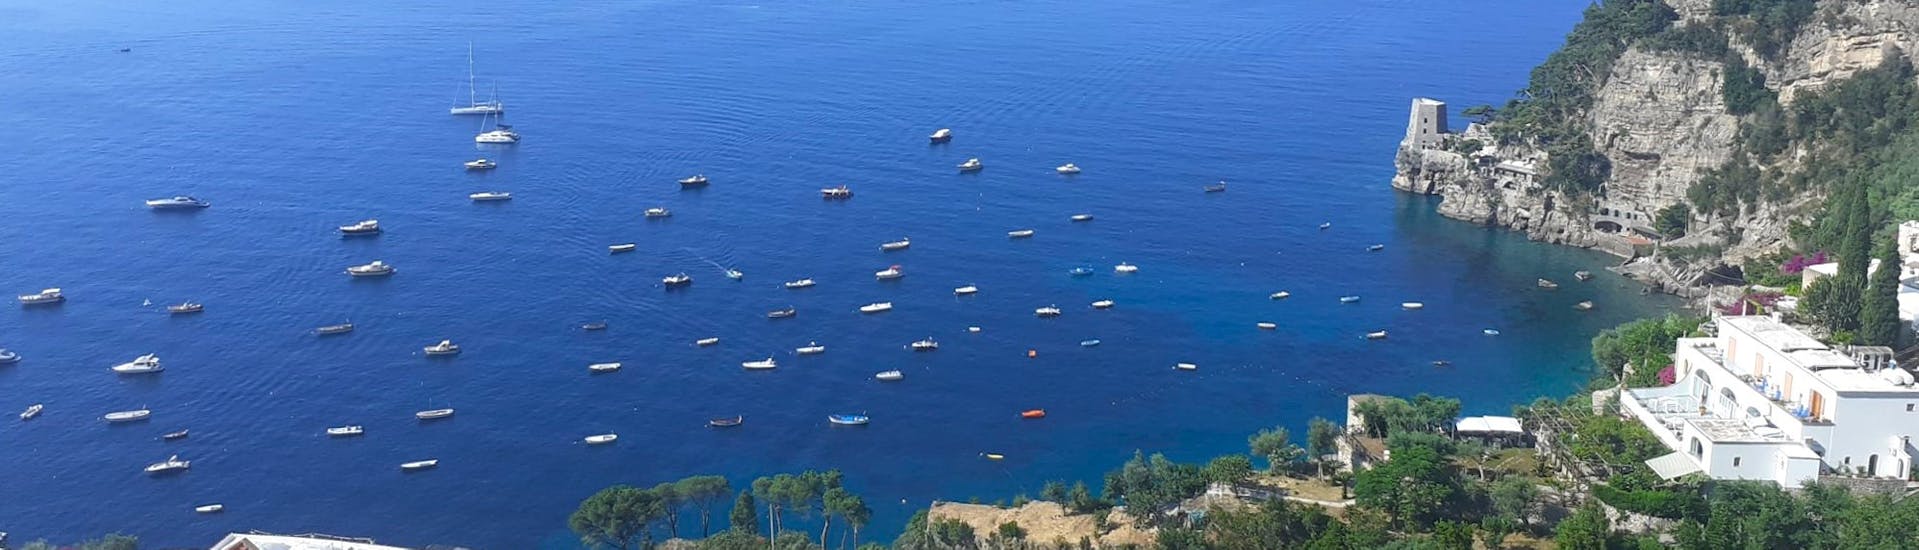 Vue de la côte amalfitaine depuis le ciel pendant la Balade privée en bateau de Positano à Capri - Journée.